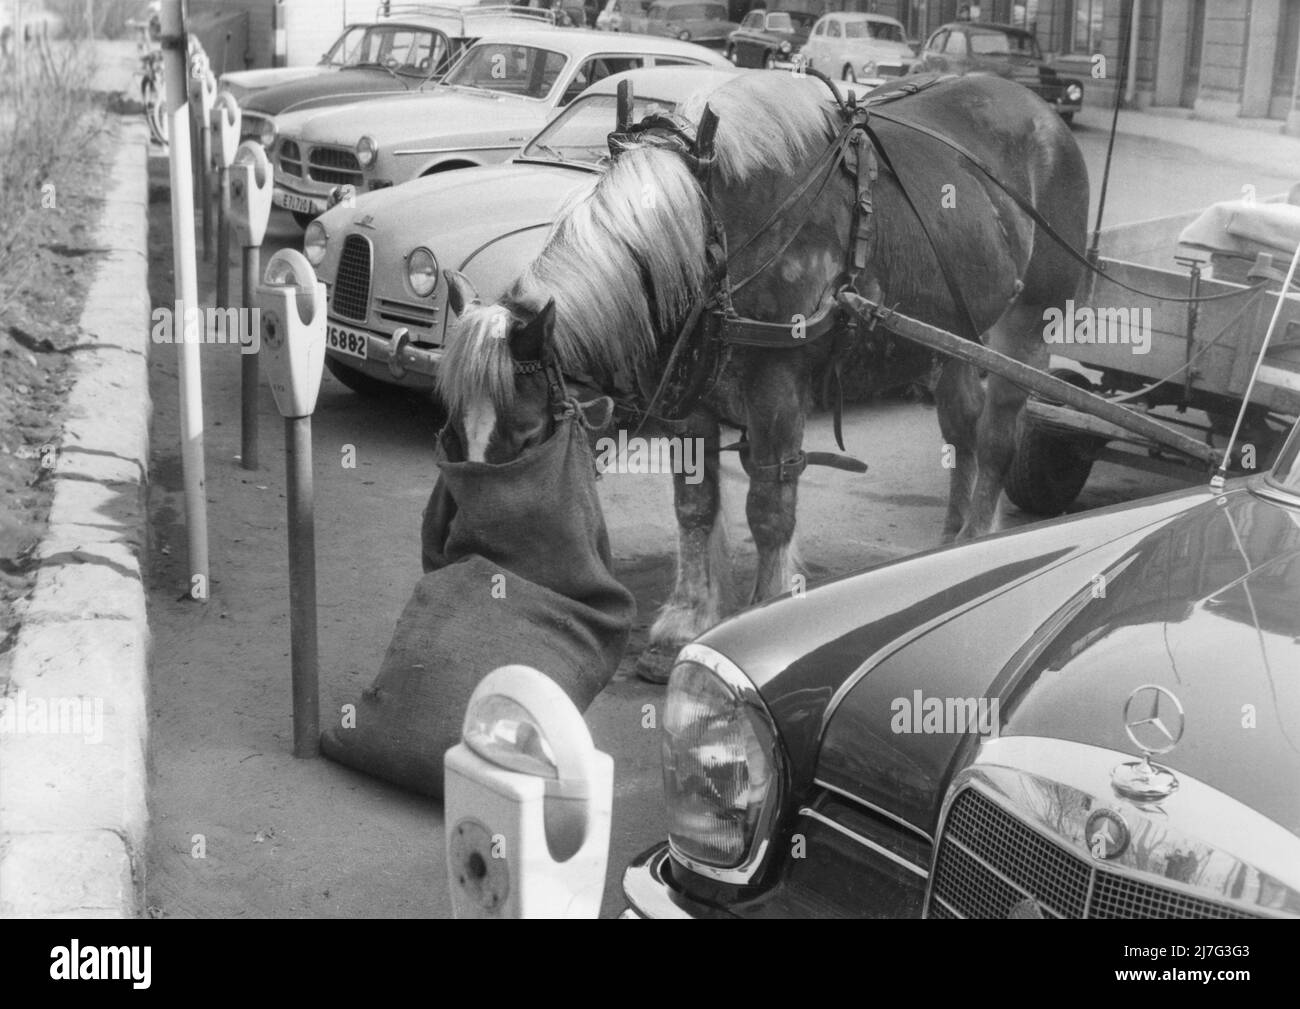 Dans le 1950s. Une décennie où les chevaux ont commencé à se départir des rues et les voitures et les camions ont pris le transport des personnes et des marchandises. Certains étaient encore autour et l'image montre un cheval 'garée' comme une voiture à un mètre, manger à partir d'un sac de foin. Suède 1950s Banque D'Images